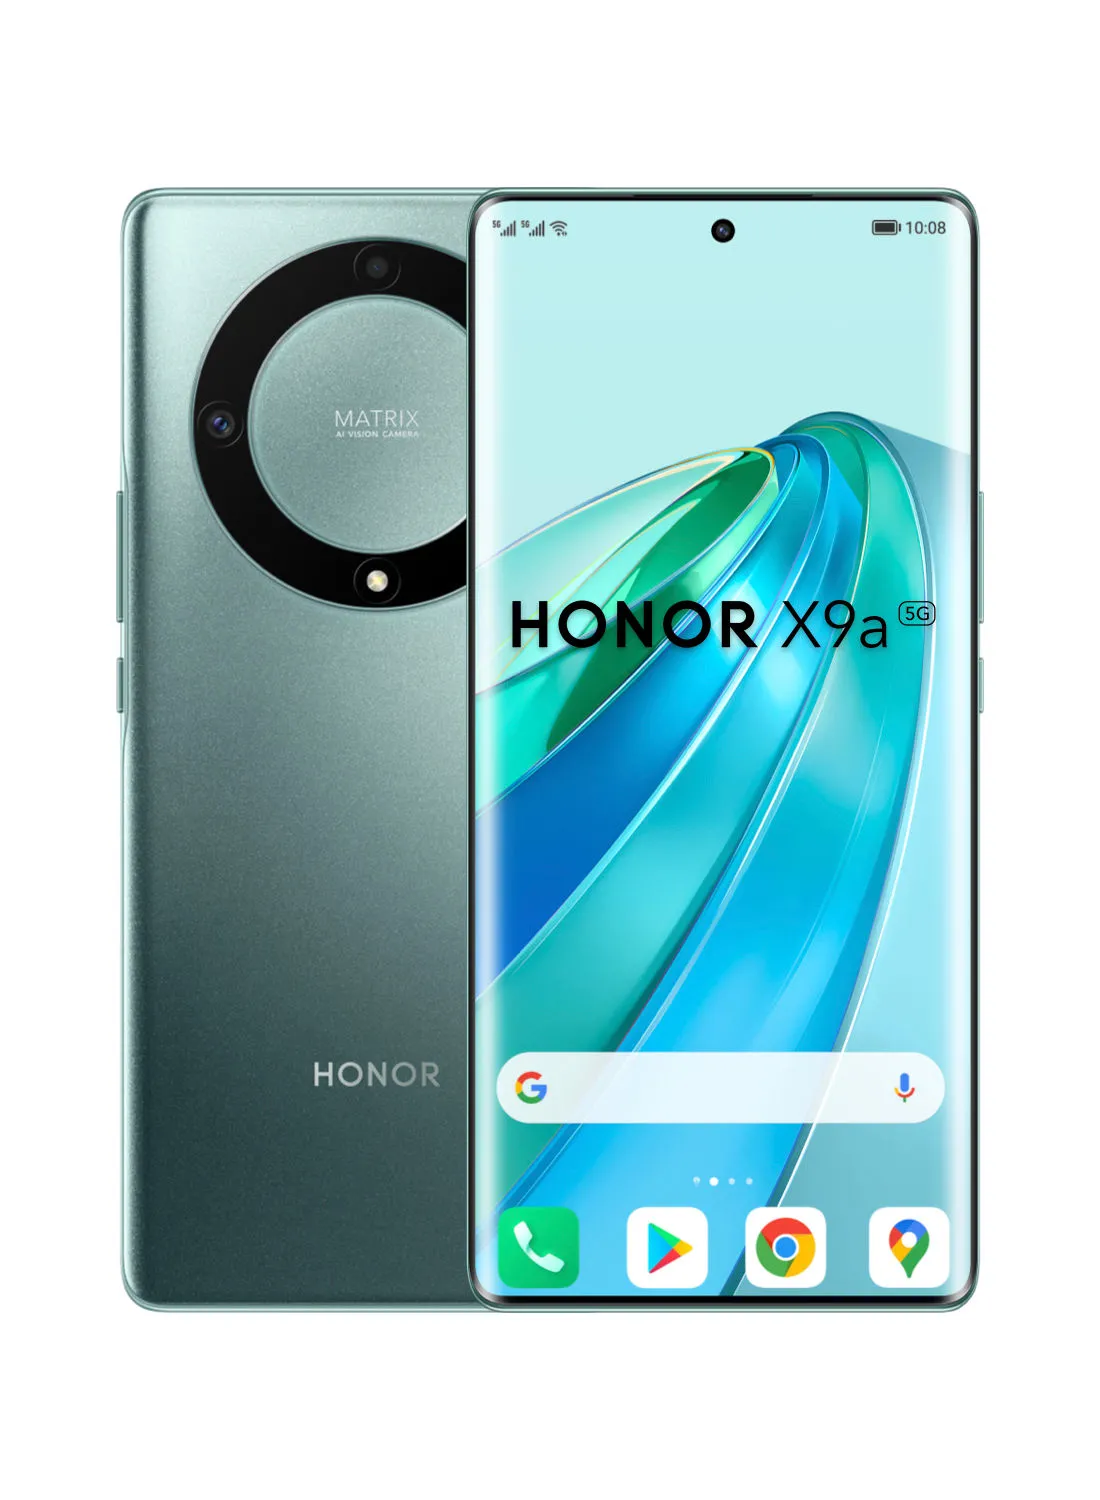 هاتف Honor X9a ثنائي الشريحة باللون الأخضر الزمردي ، وذاكرة وصول عشوائي (RAM) سعة 8 جيجابايت ، وذاكرة وصول عشوائي (RAM) سعة 256 جيجابايت ، وشبكة 5G - إصدار الشرق الأوسط